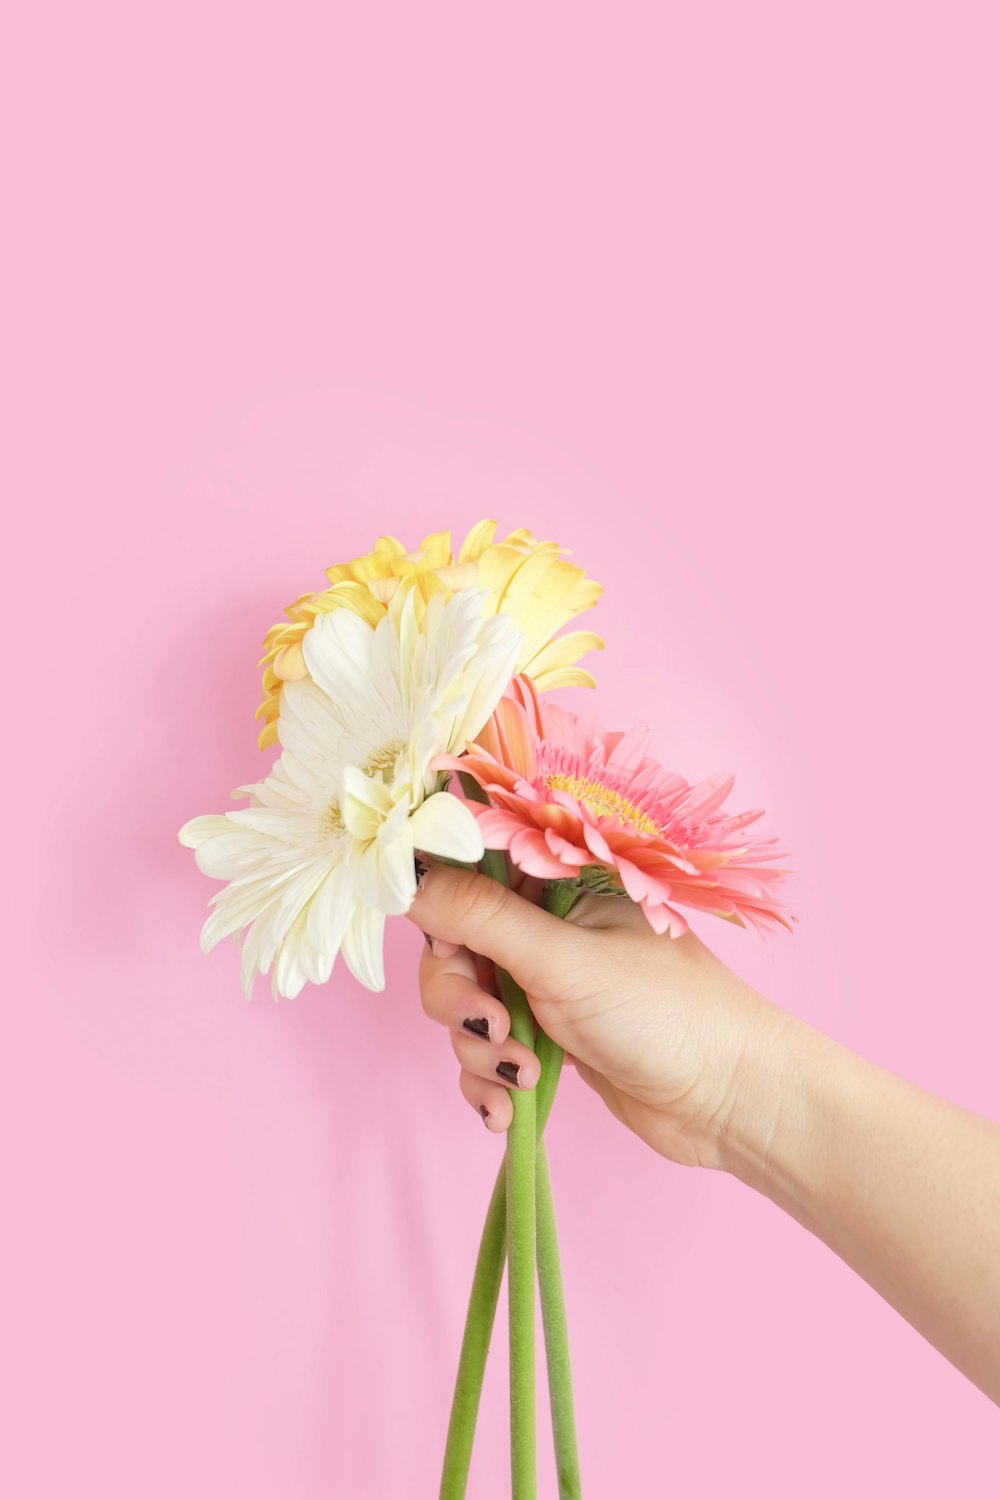 pessoa segurando flores brancas e cor-de-rosa